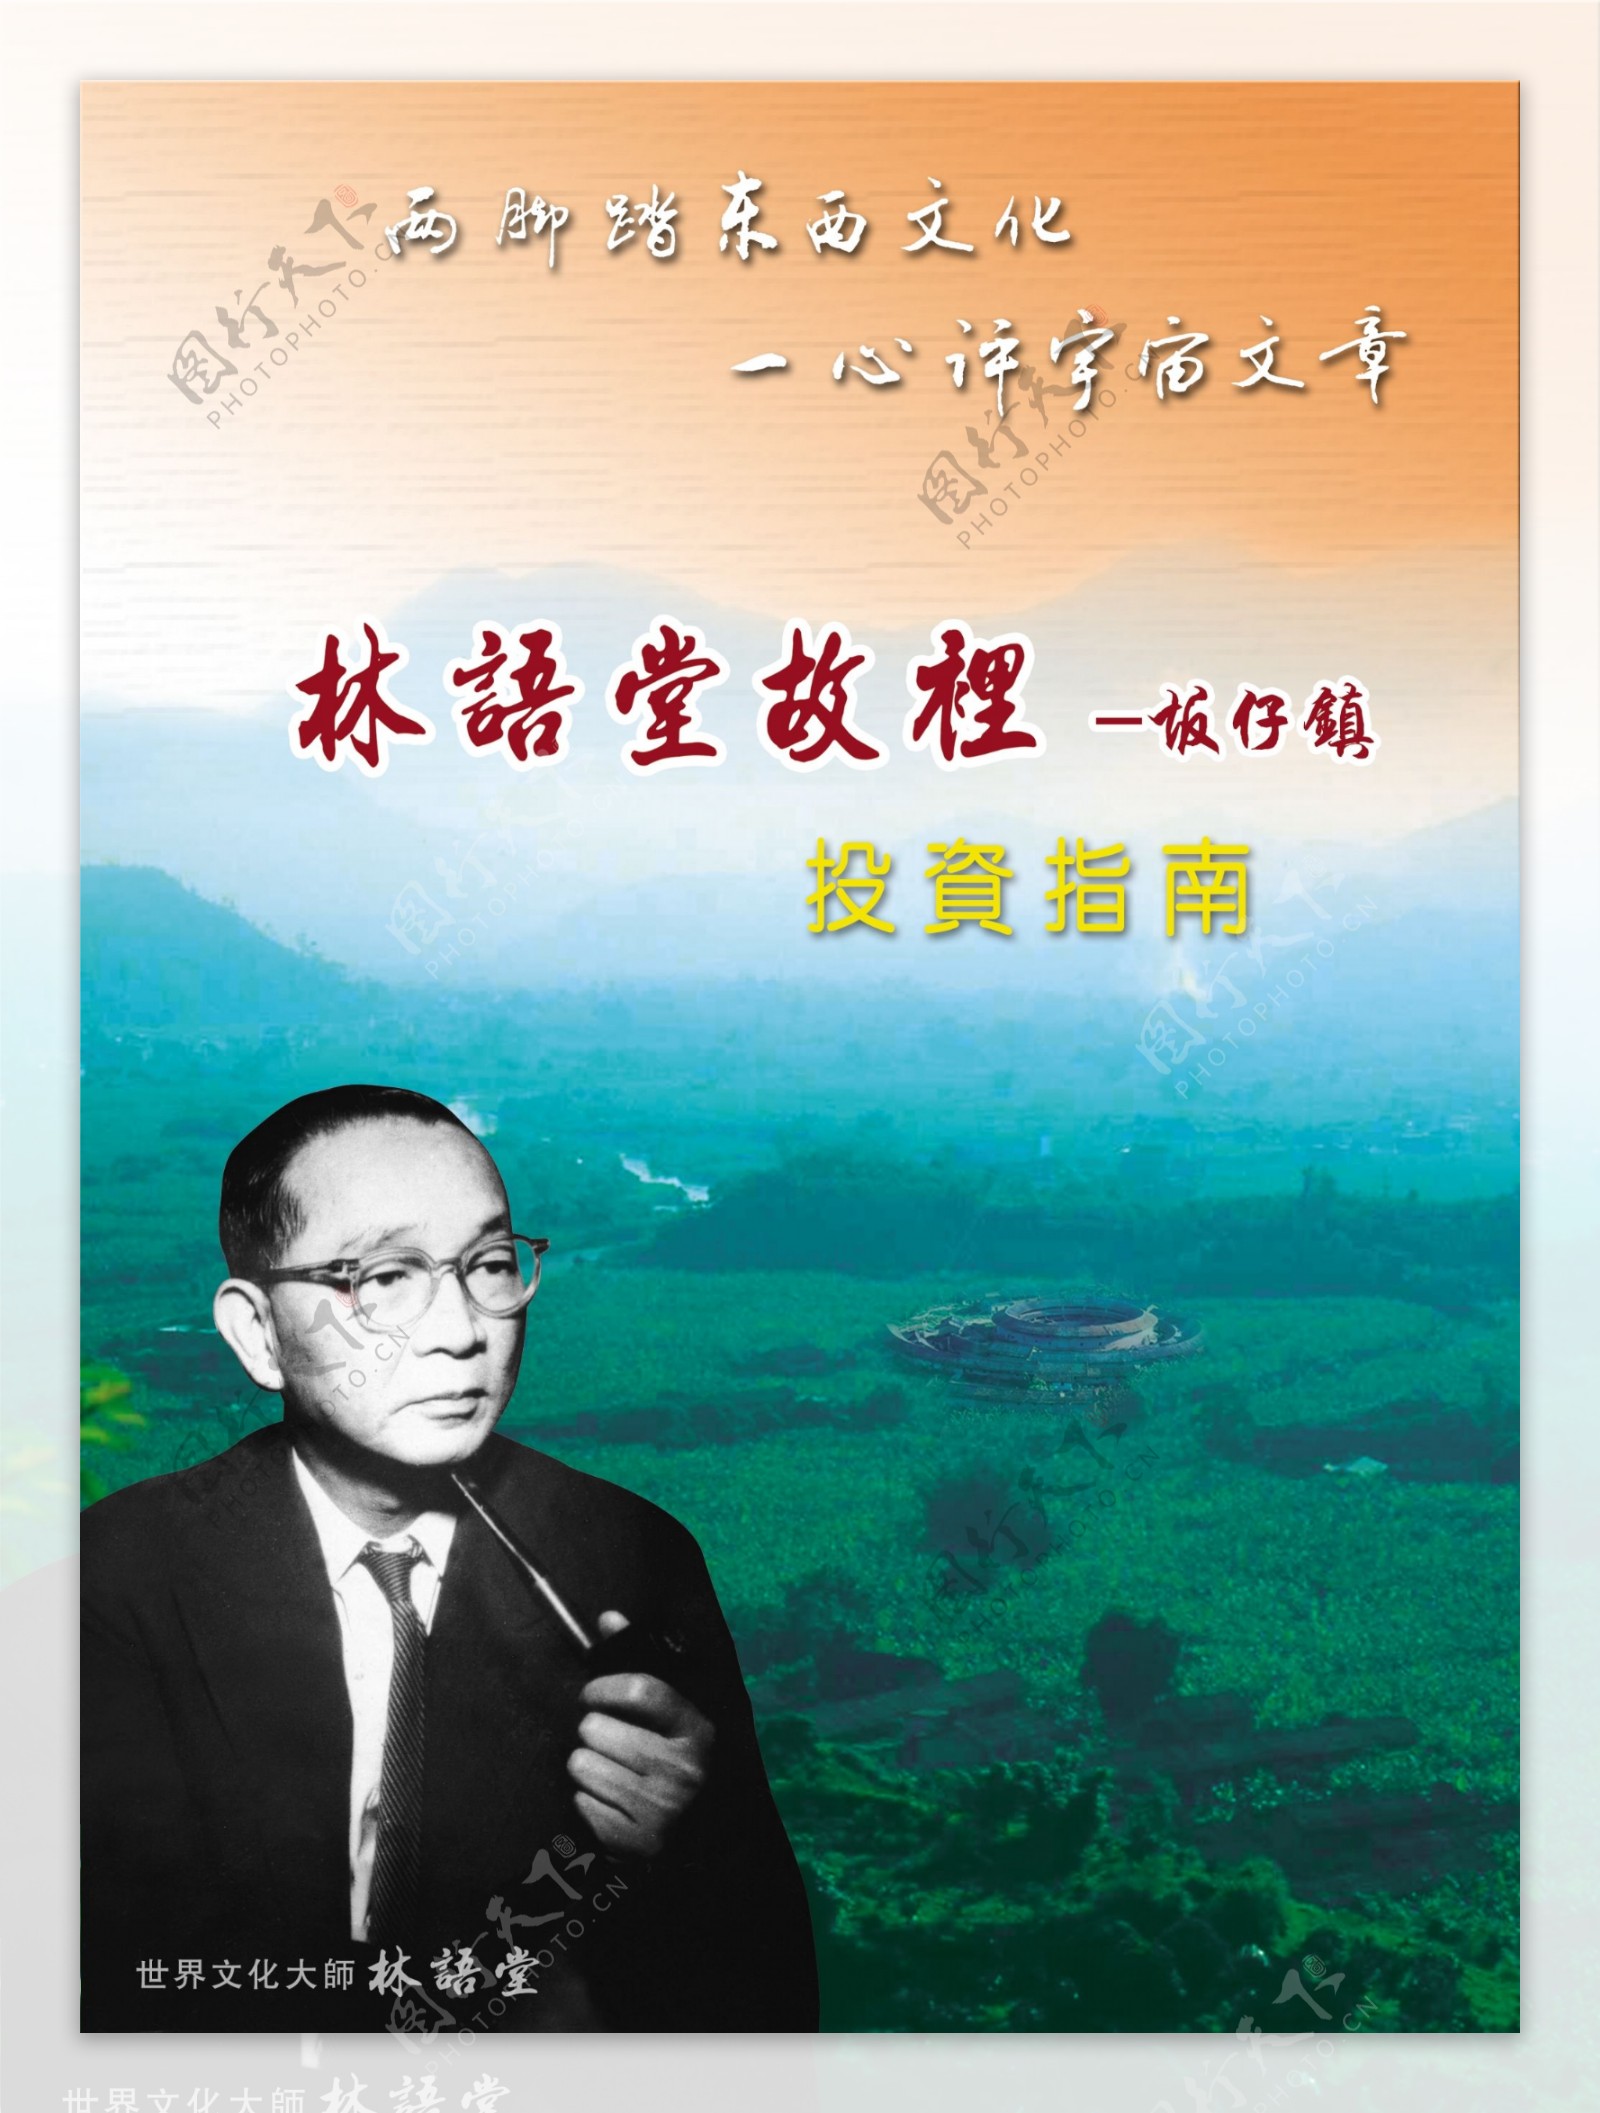 林语堂画册封面图片